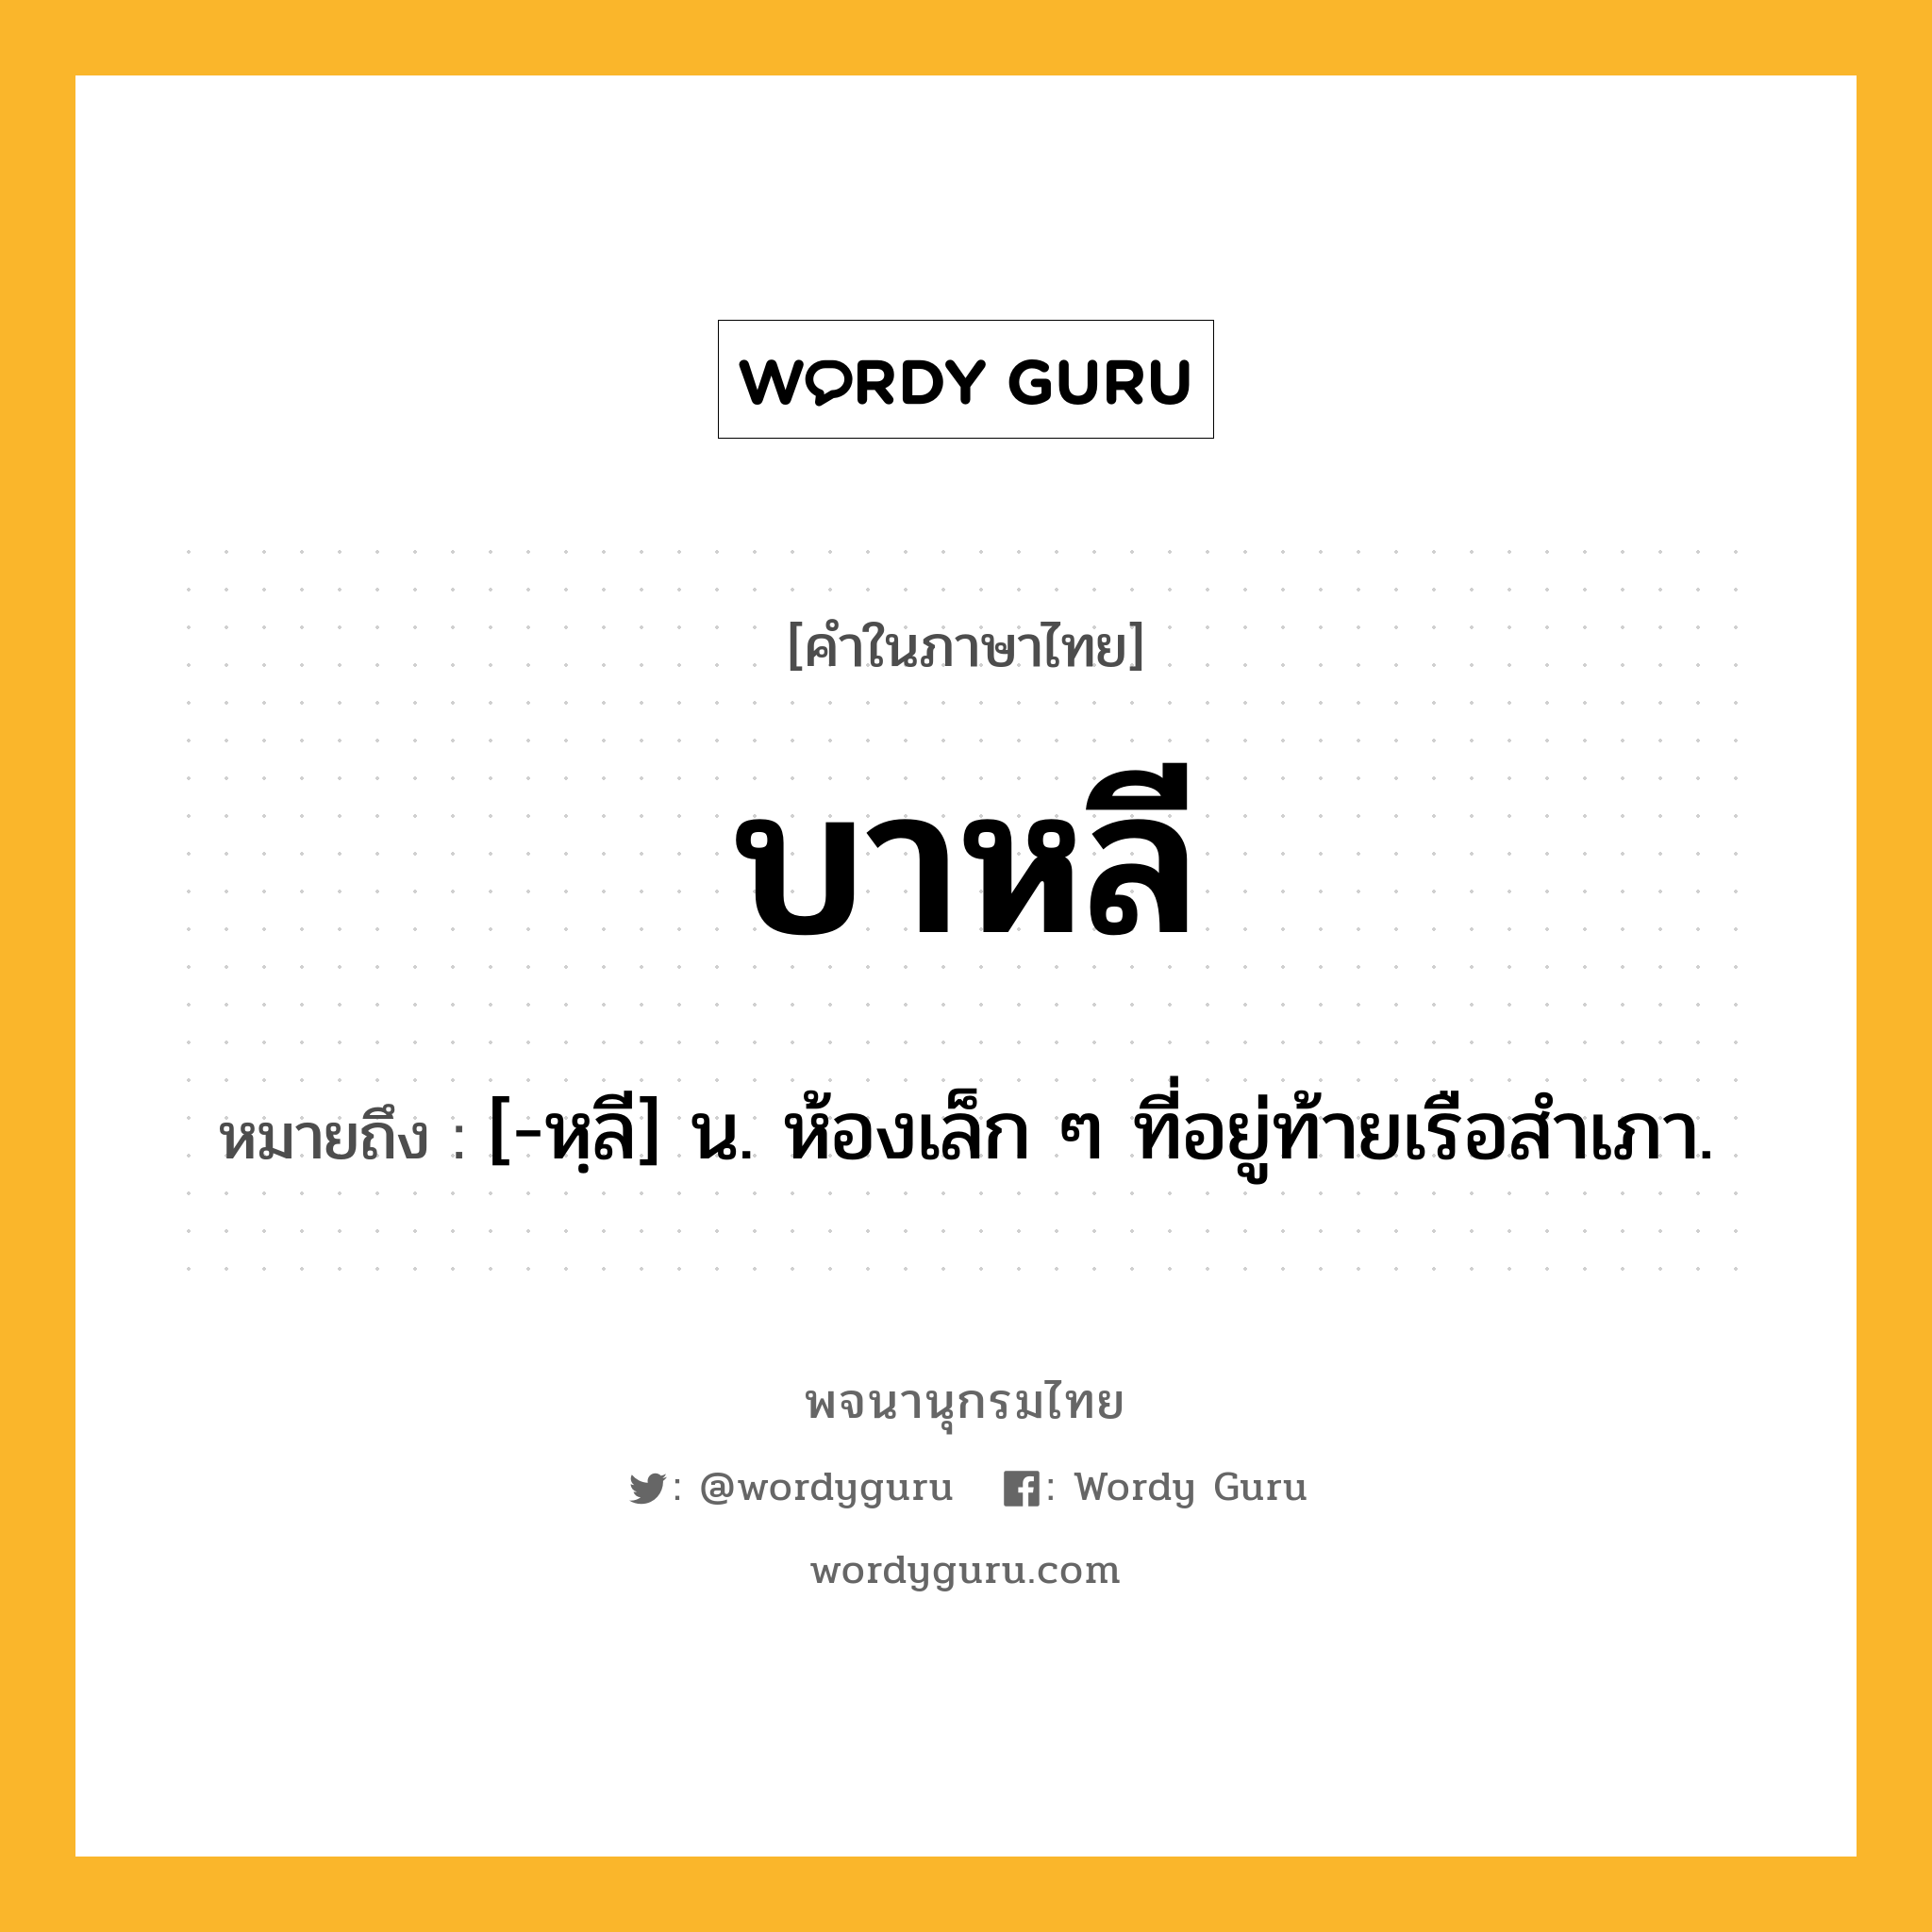 บาหลี ความหมาย หมายถึงอะไร?, คำในภาษาไทย บาหลี หมายถึง [-หฺลี] น. ห้องเล็ก ๆ ที่อยู่ท้ายเรือสําเภา.